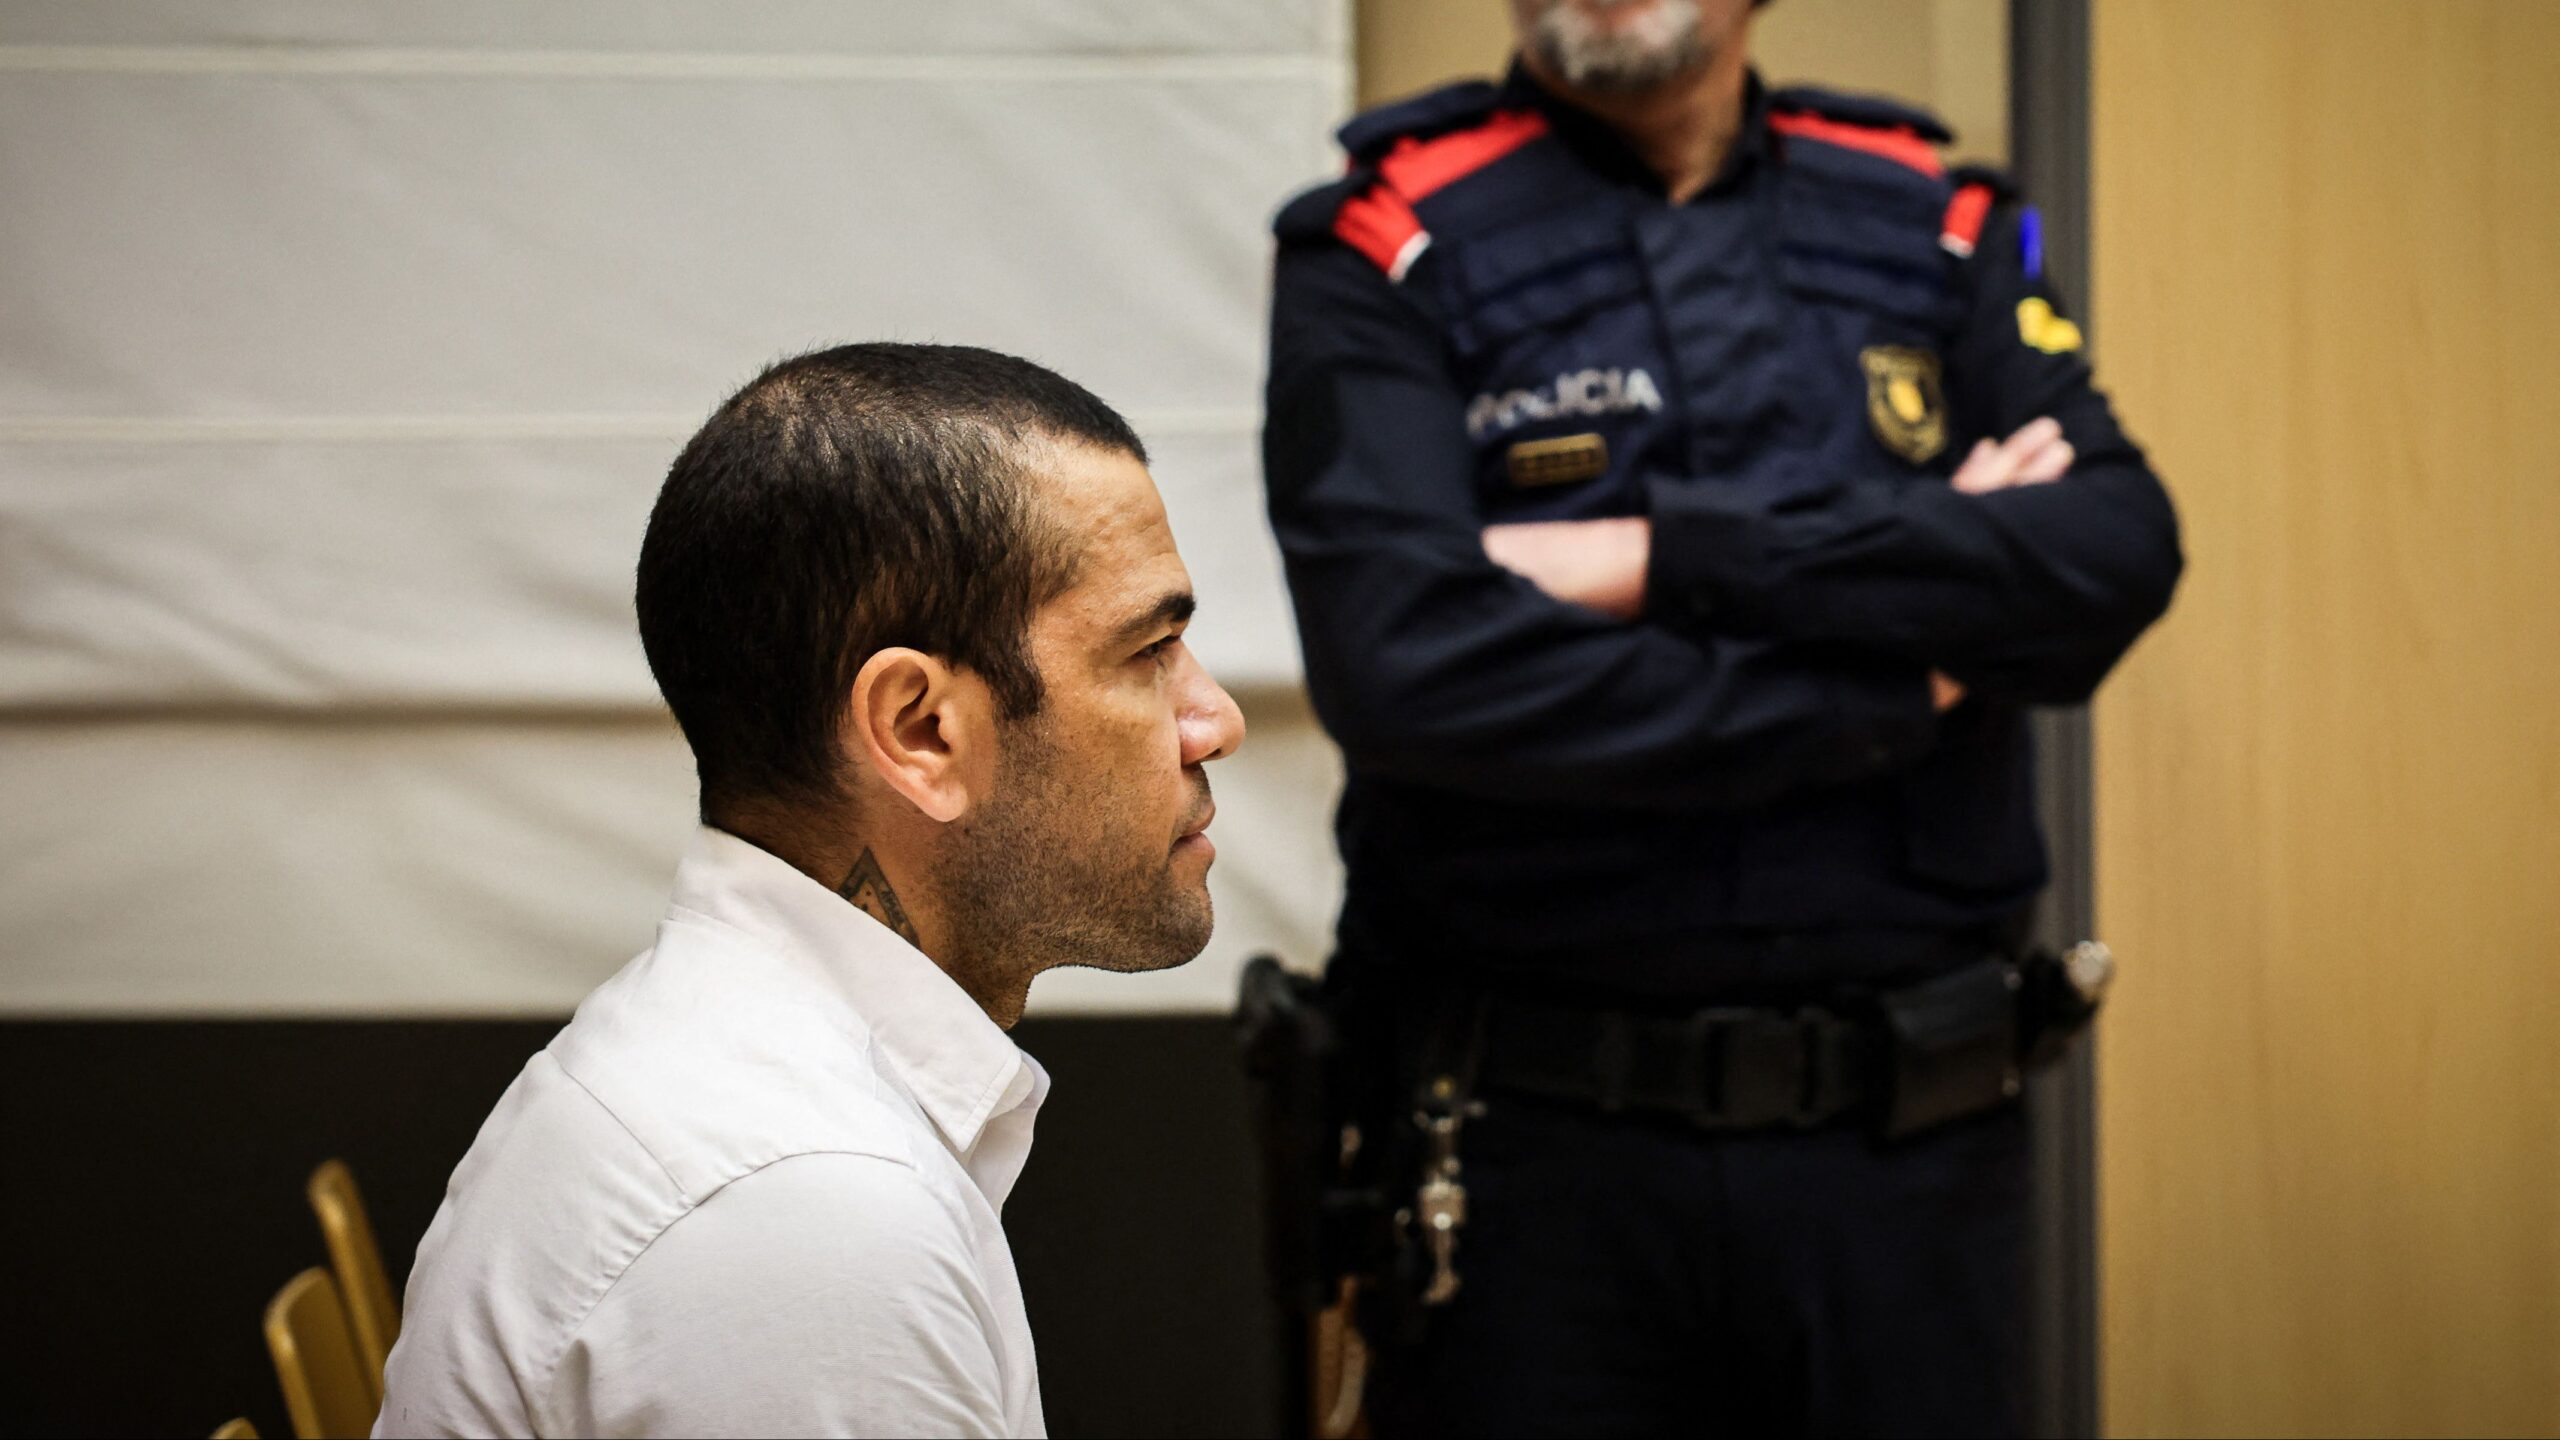 Dani Alves, condenado a cuatro años y seis meses de prisión por violar a una chica en una discoteca de Barcelona. Imagen extraída de RTVE